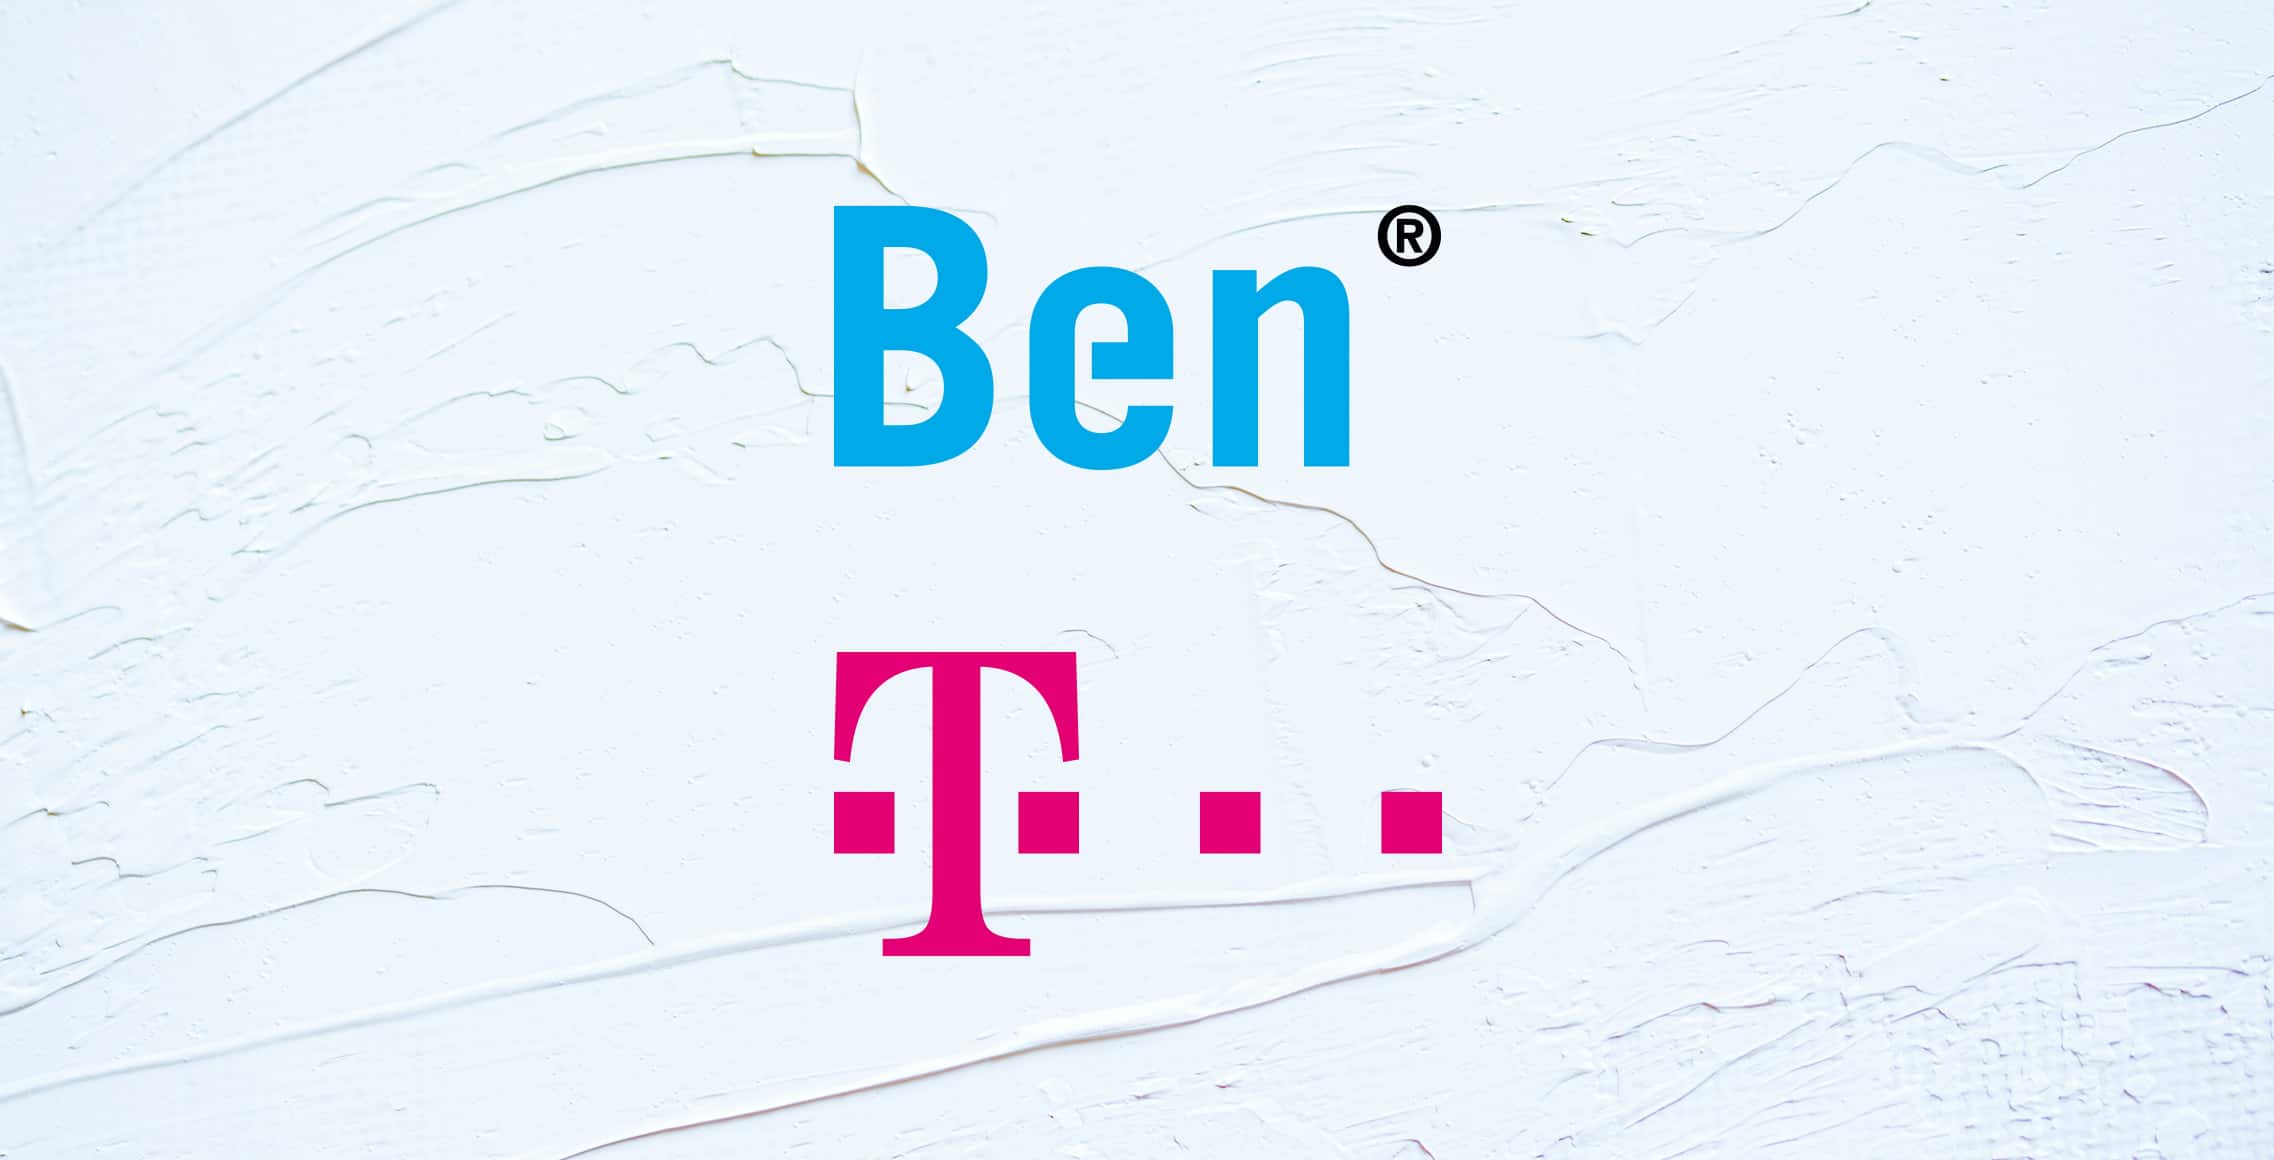 Het verhaal van T-Mobile en Ben